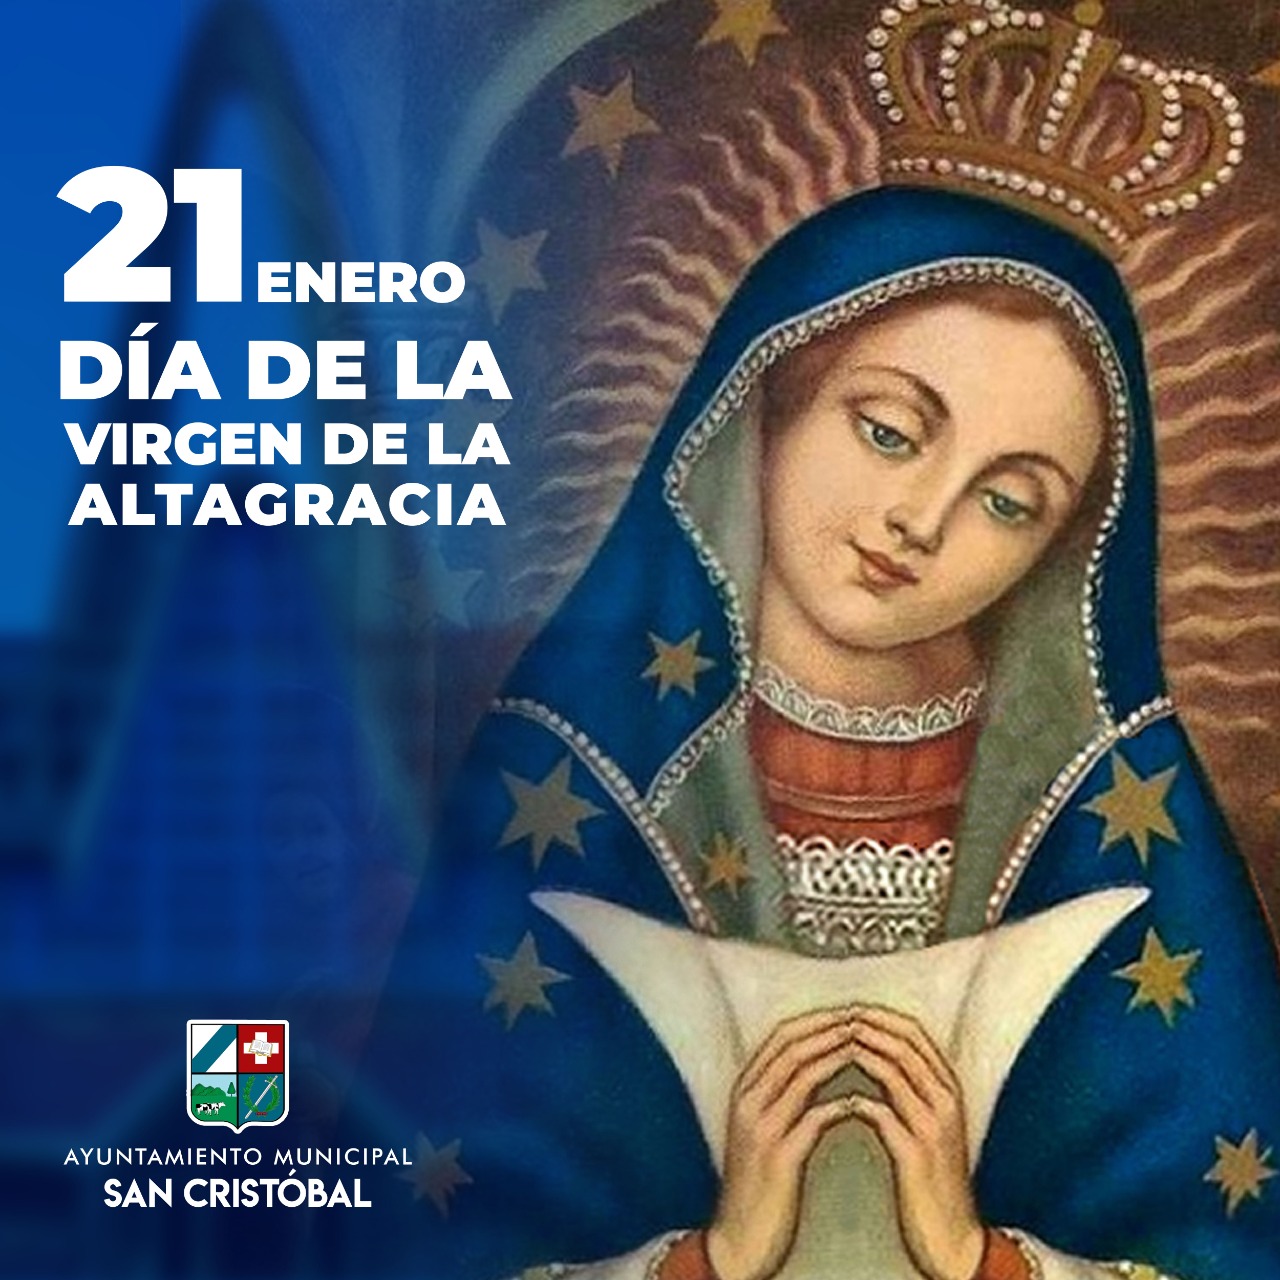 Hoy conmemoramos el Día de la Altagracia, «madre protectora y espiritual del pueblo dominicano».